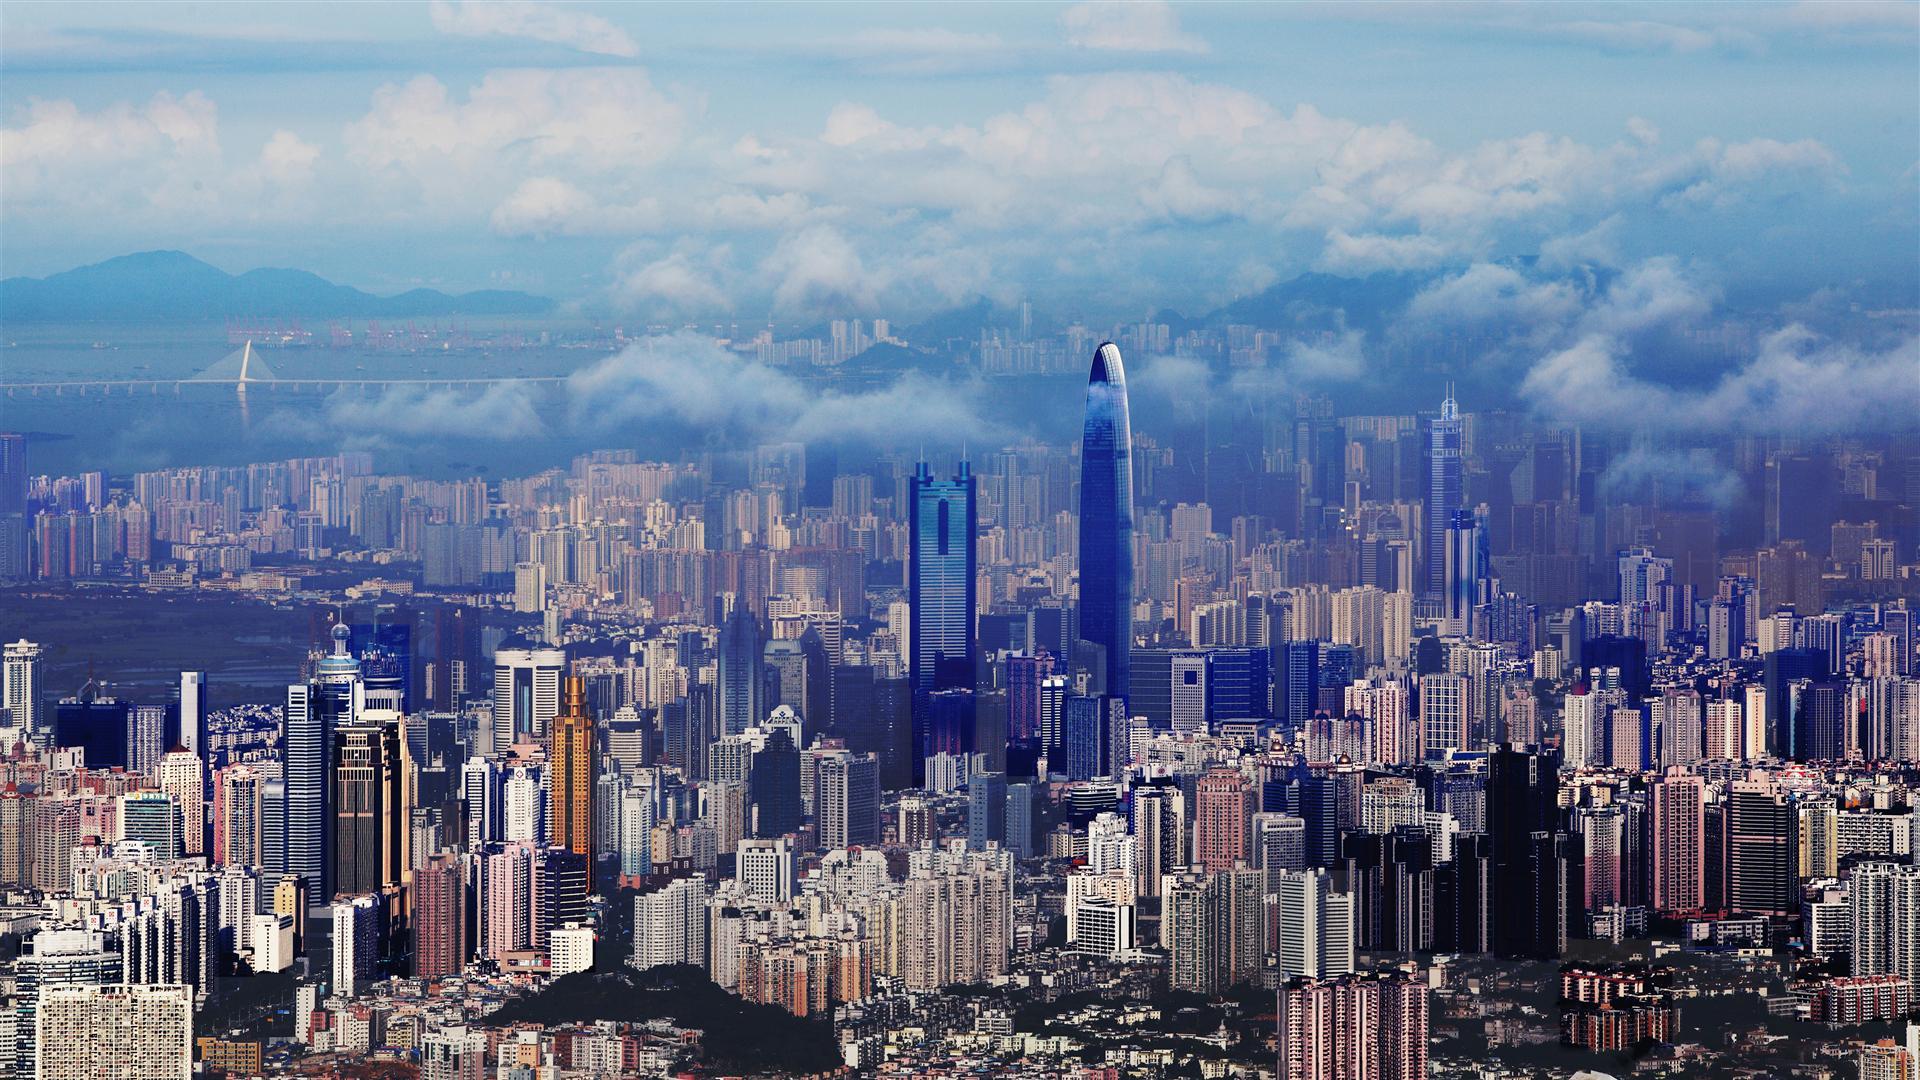 Le 13e IIICF de Macao s’est concentré sur la BRI dans les infrastructures internationales